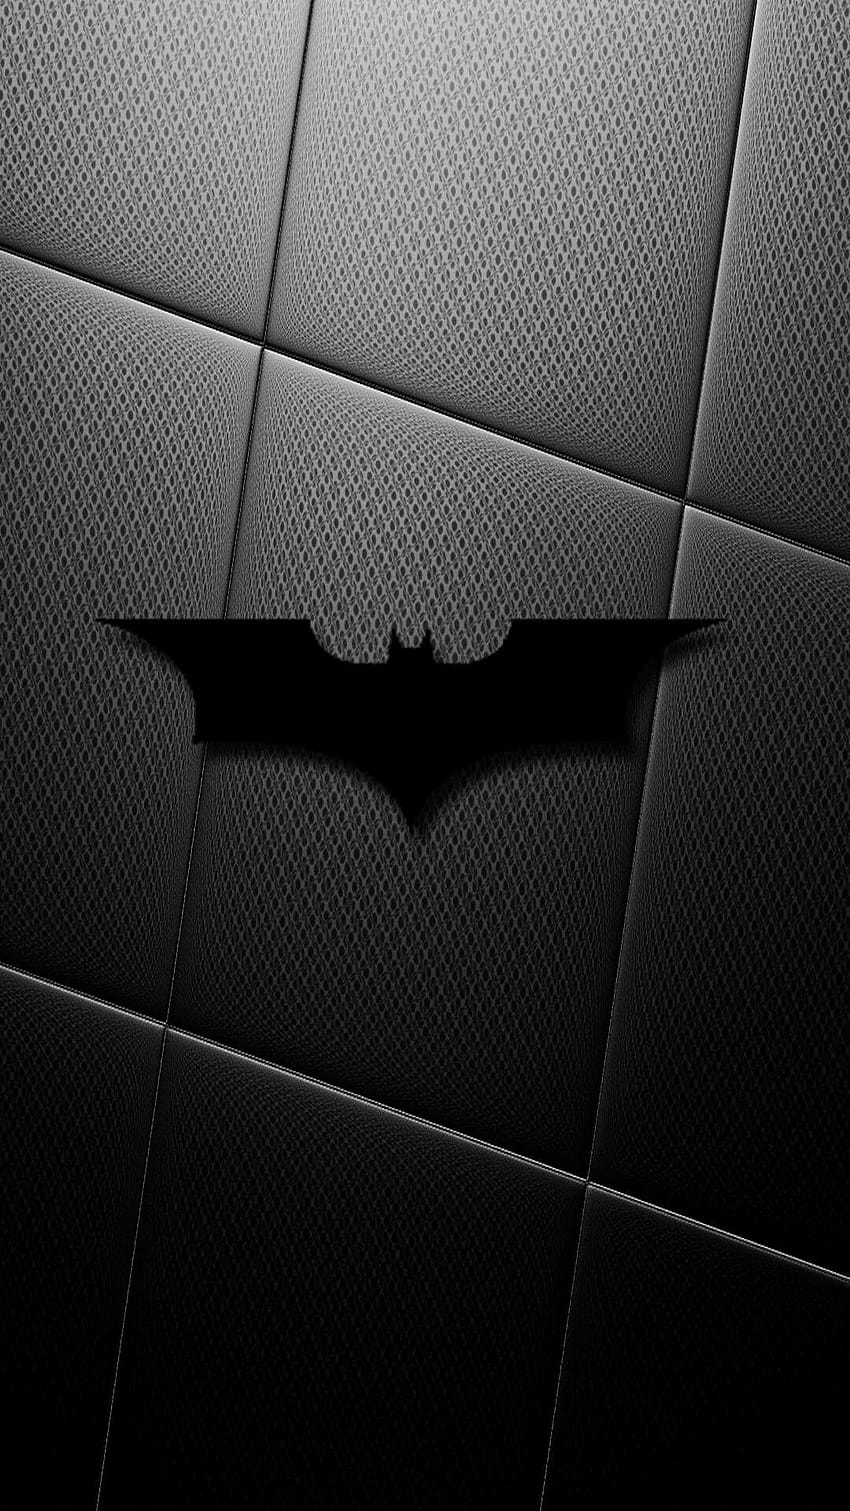 Batman batarang HD phone wallpaper | Pxfuel